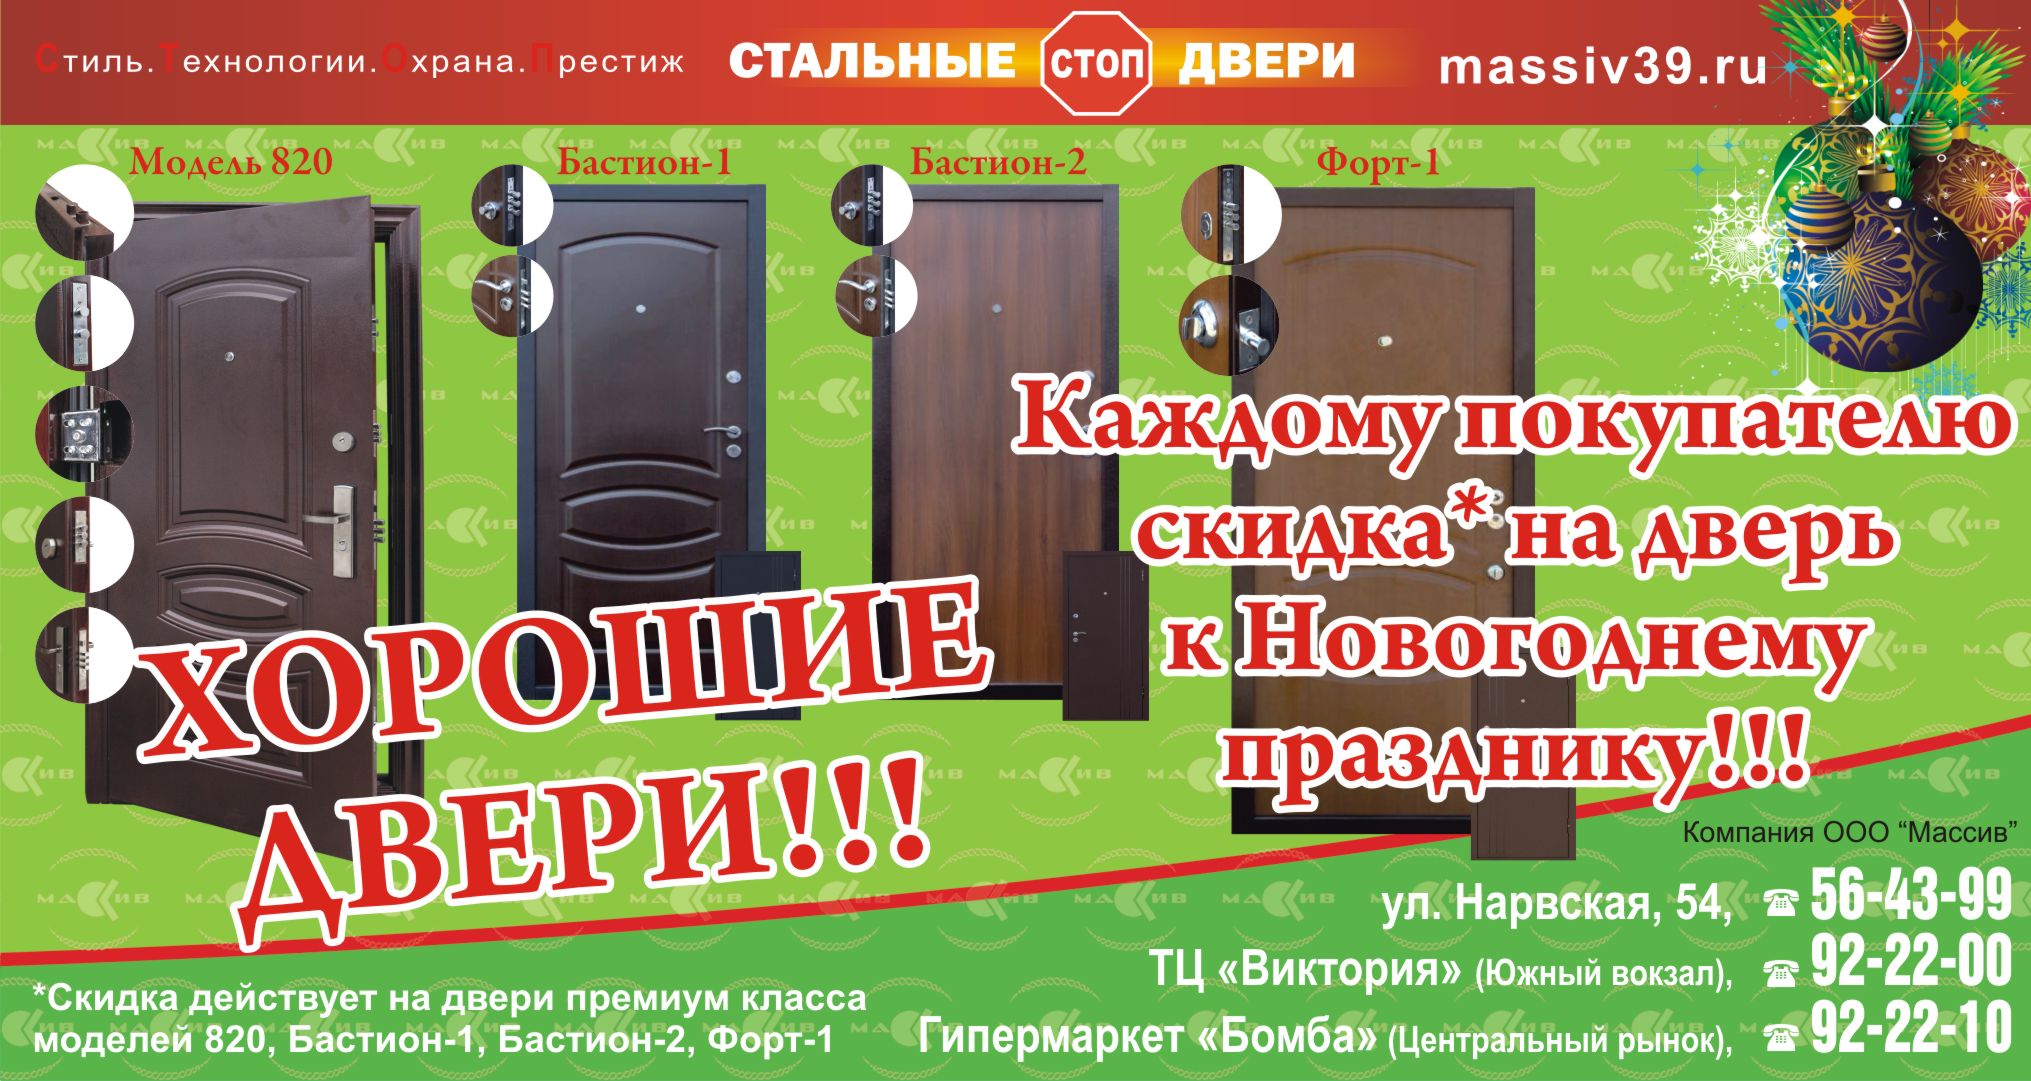 www.massiv39.ru -  